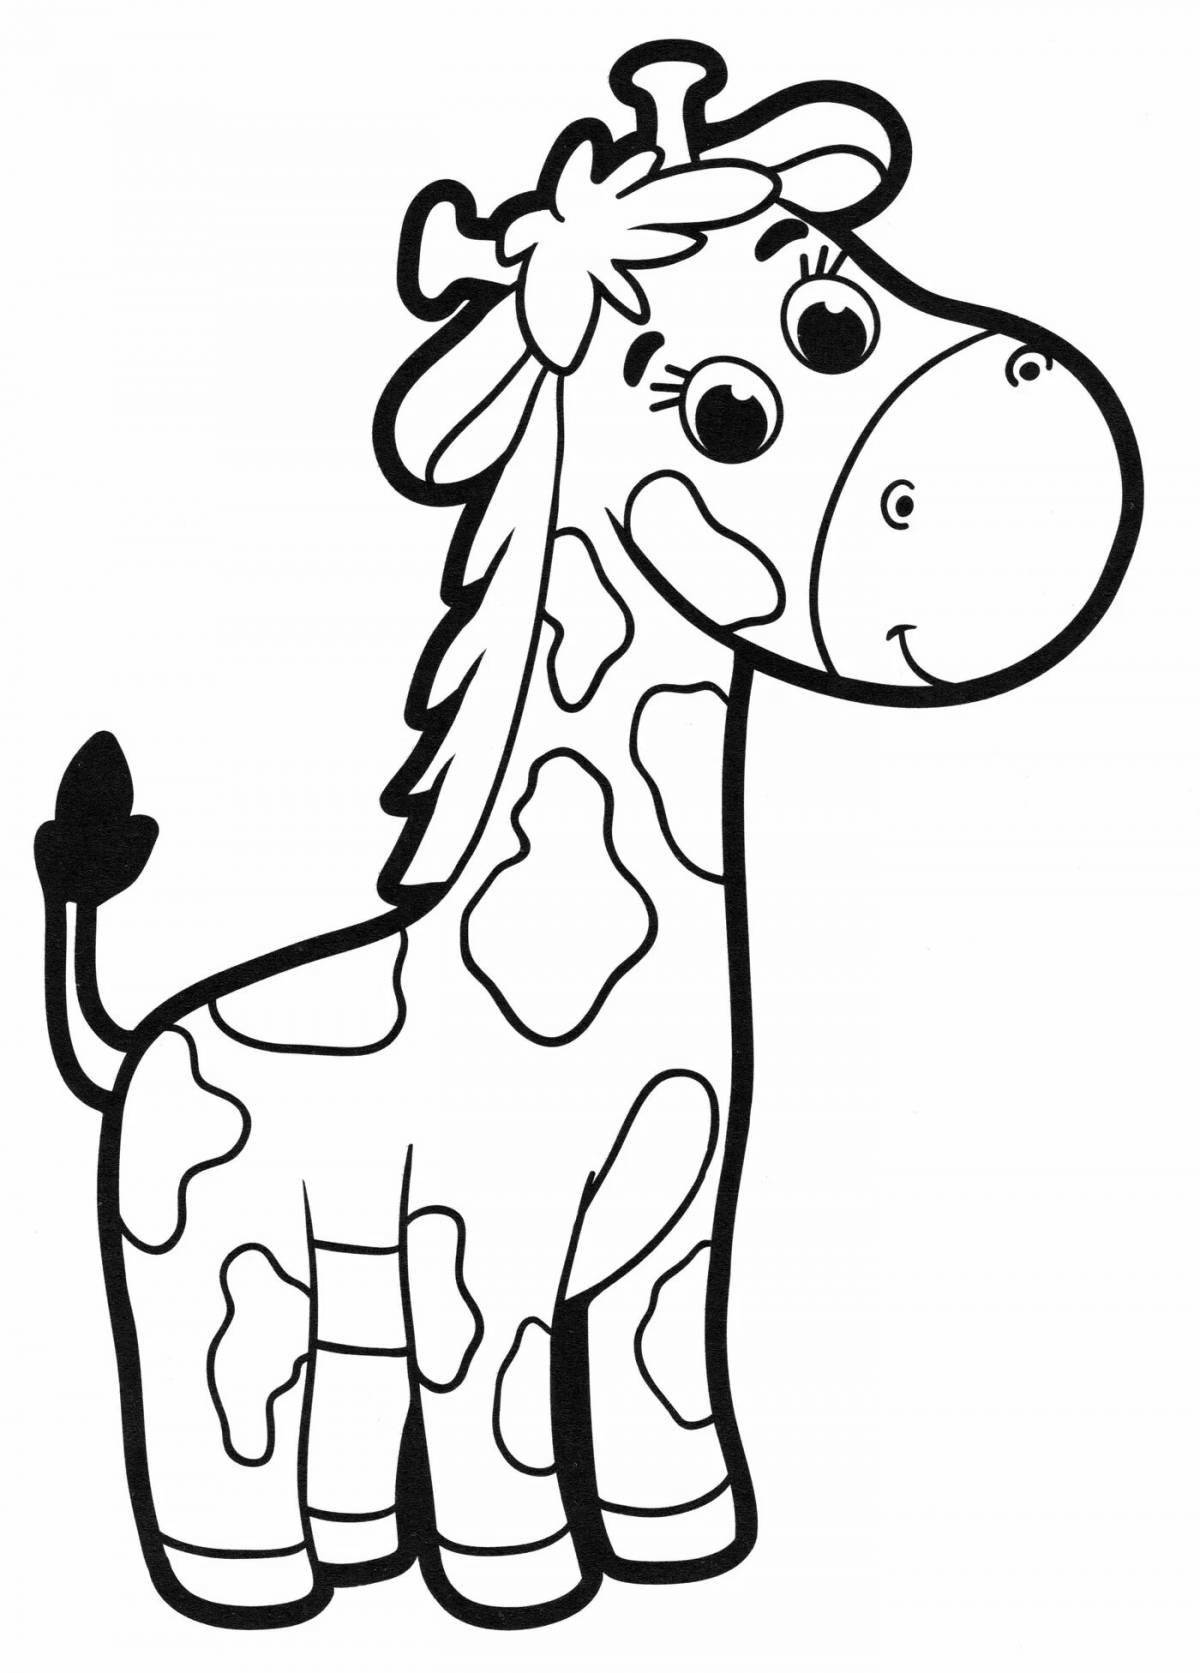 Bright giraffe coloring page